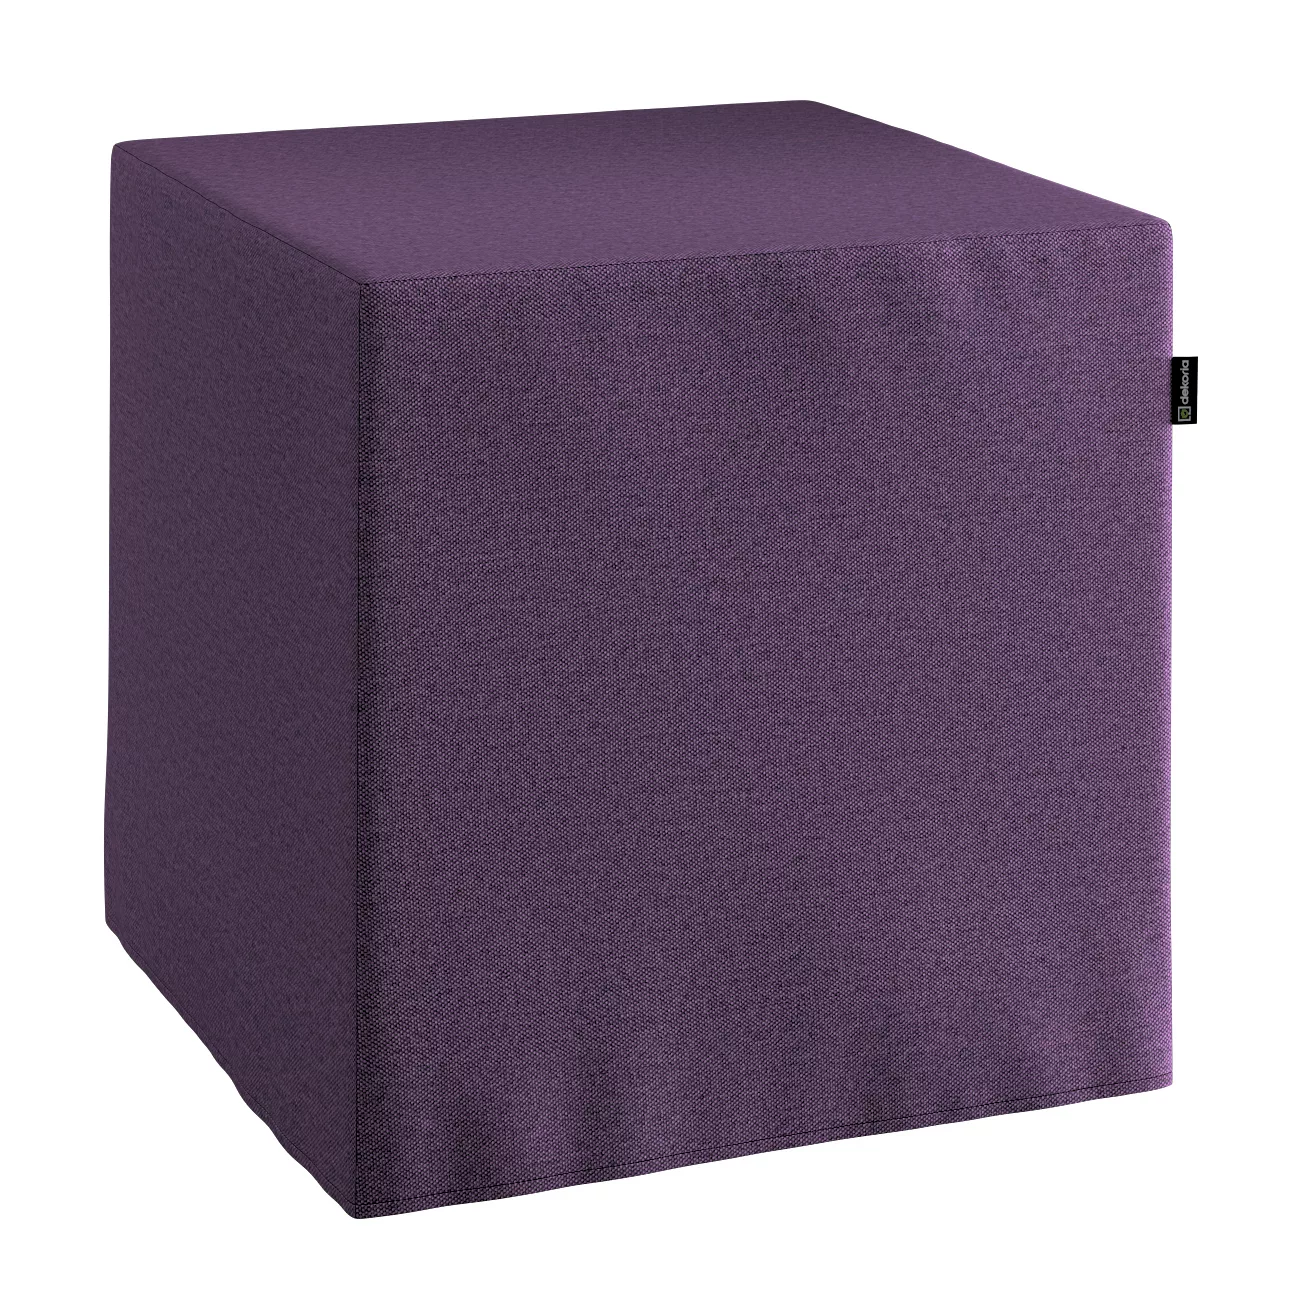 Bezug für Sitzwürfel, violett, Bezug für Sitzwürfel 40 x 40 x 40 cm, Etna ( günstig online kaufen